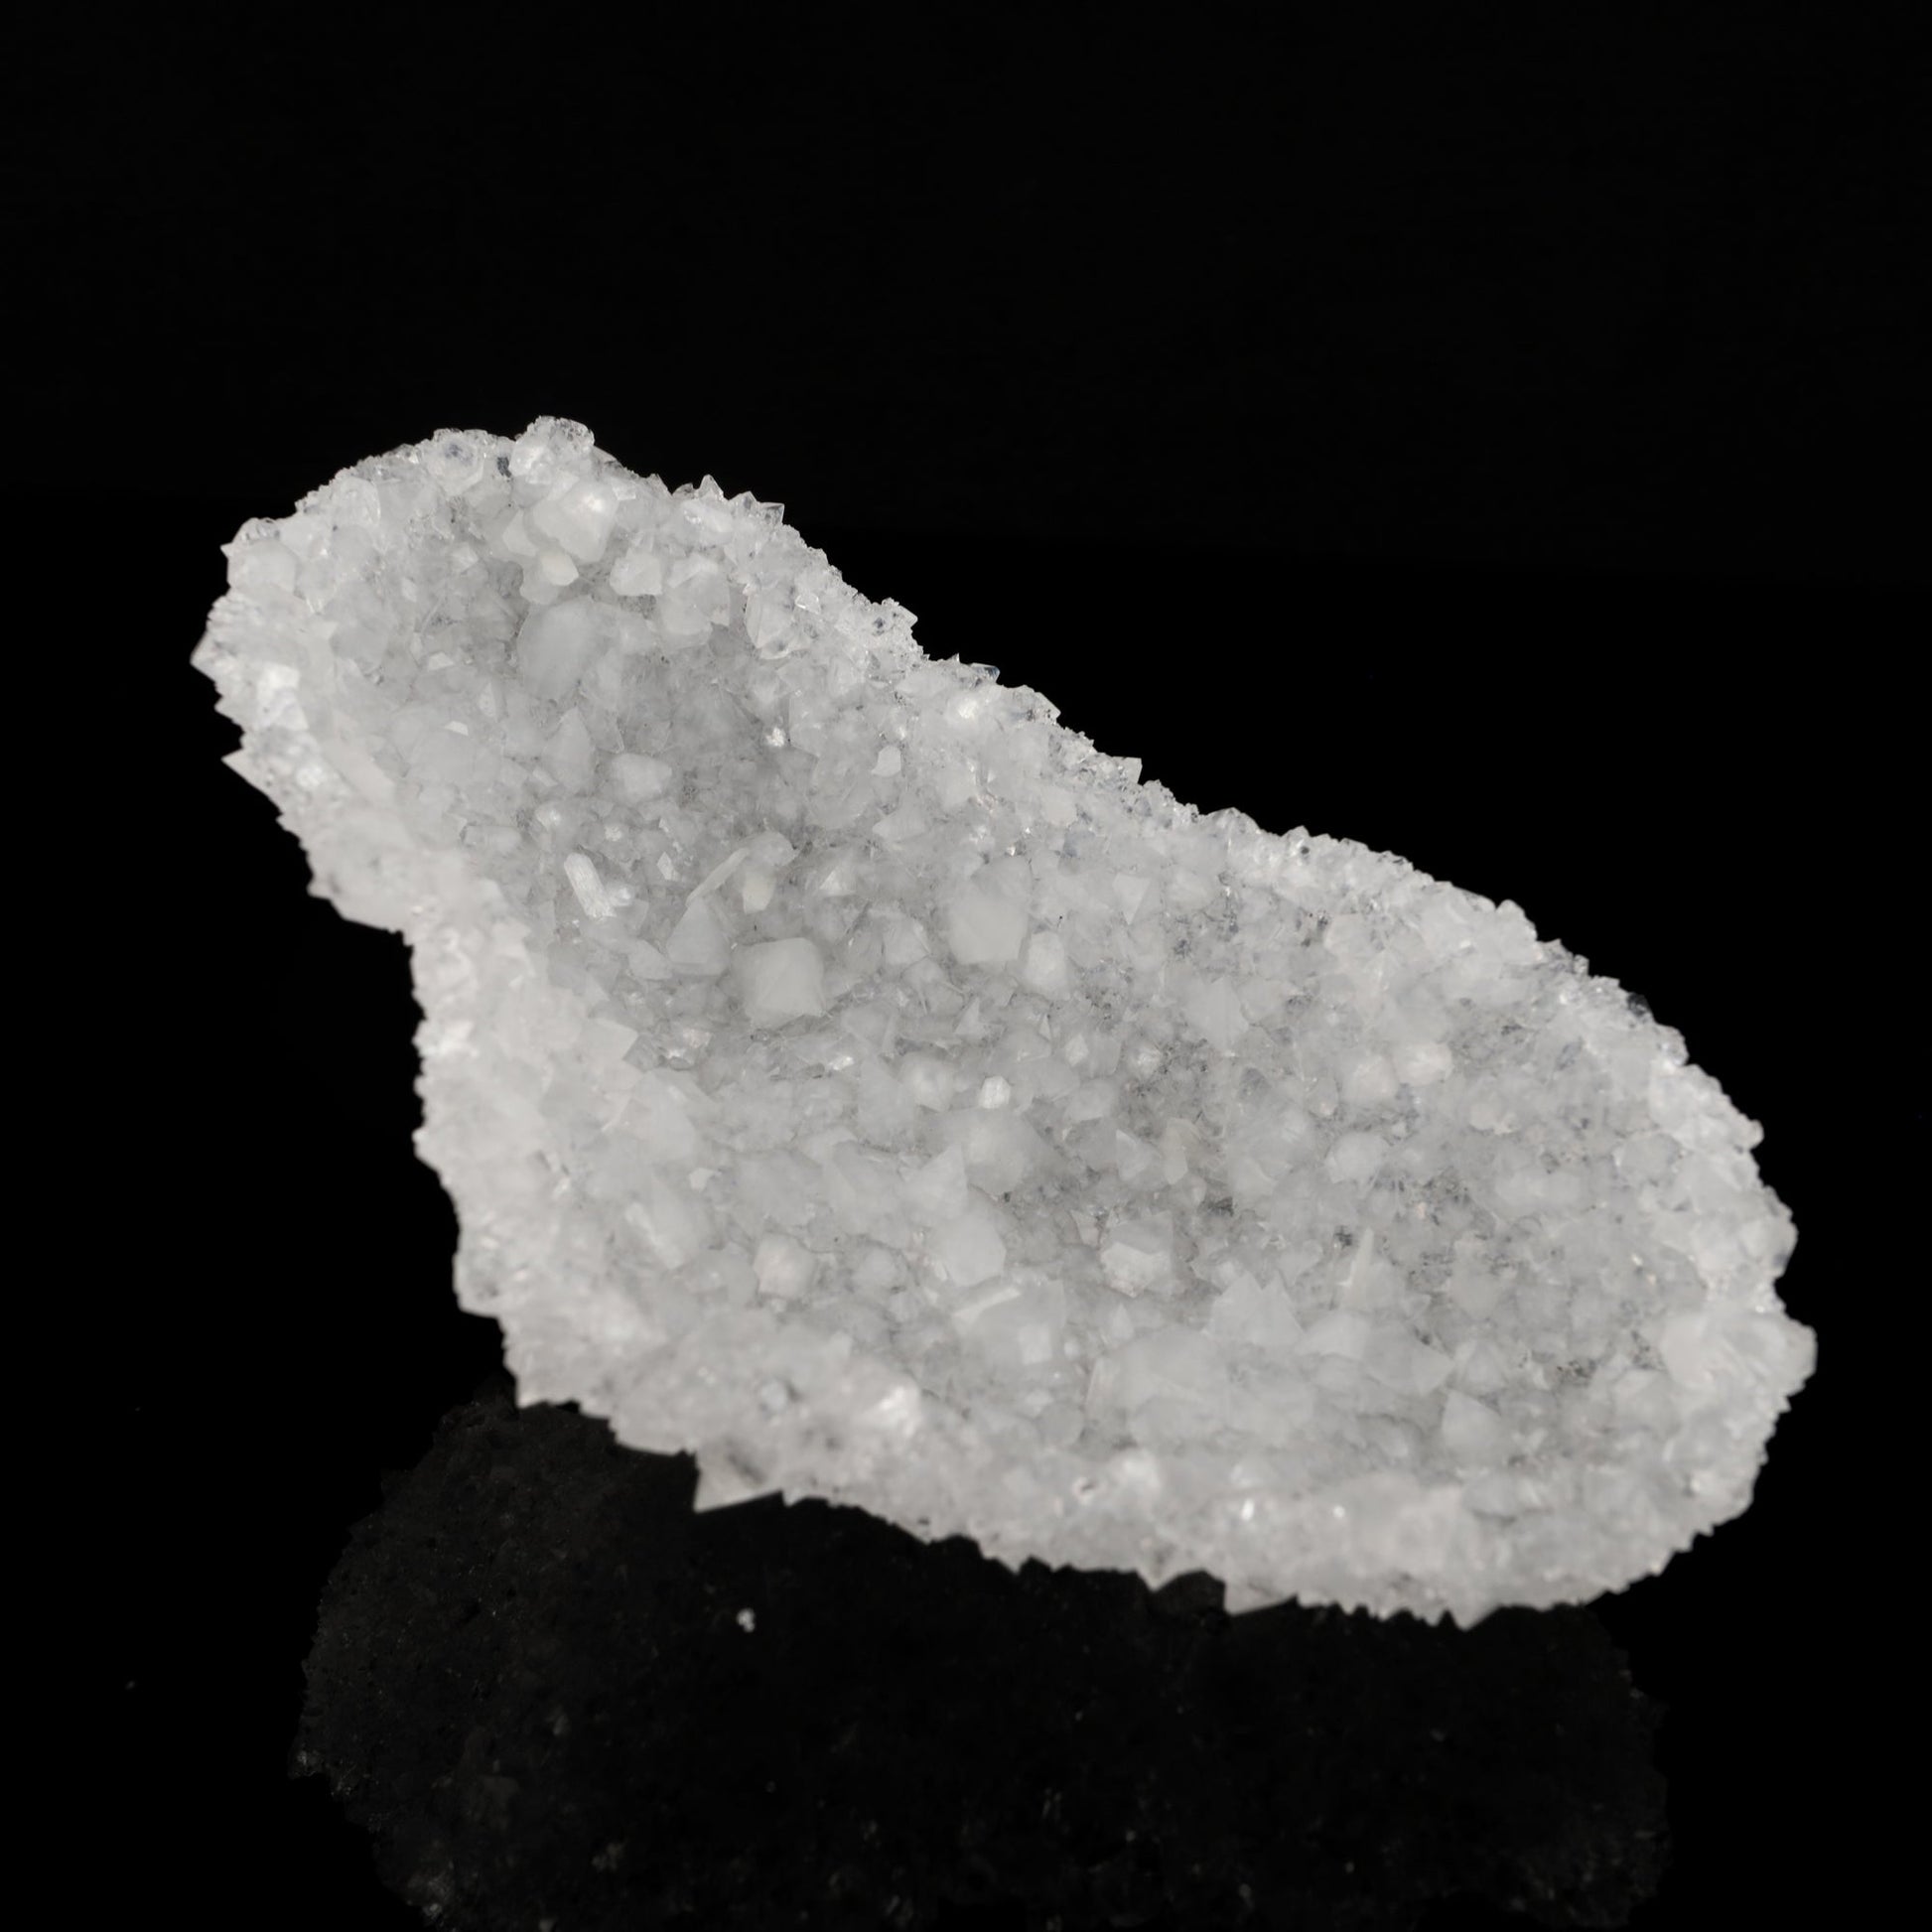 Gemmy Apophyllite Slice Natural Mineral Specimen # B 5648 Apophyllite Superb Minerals 